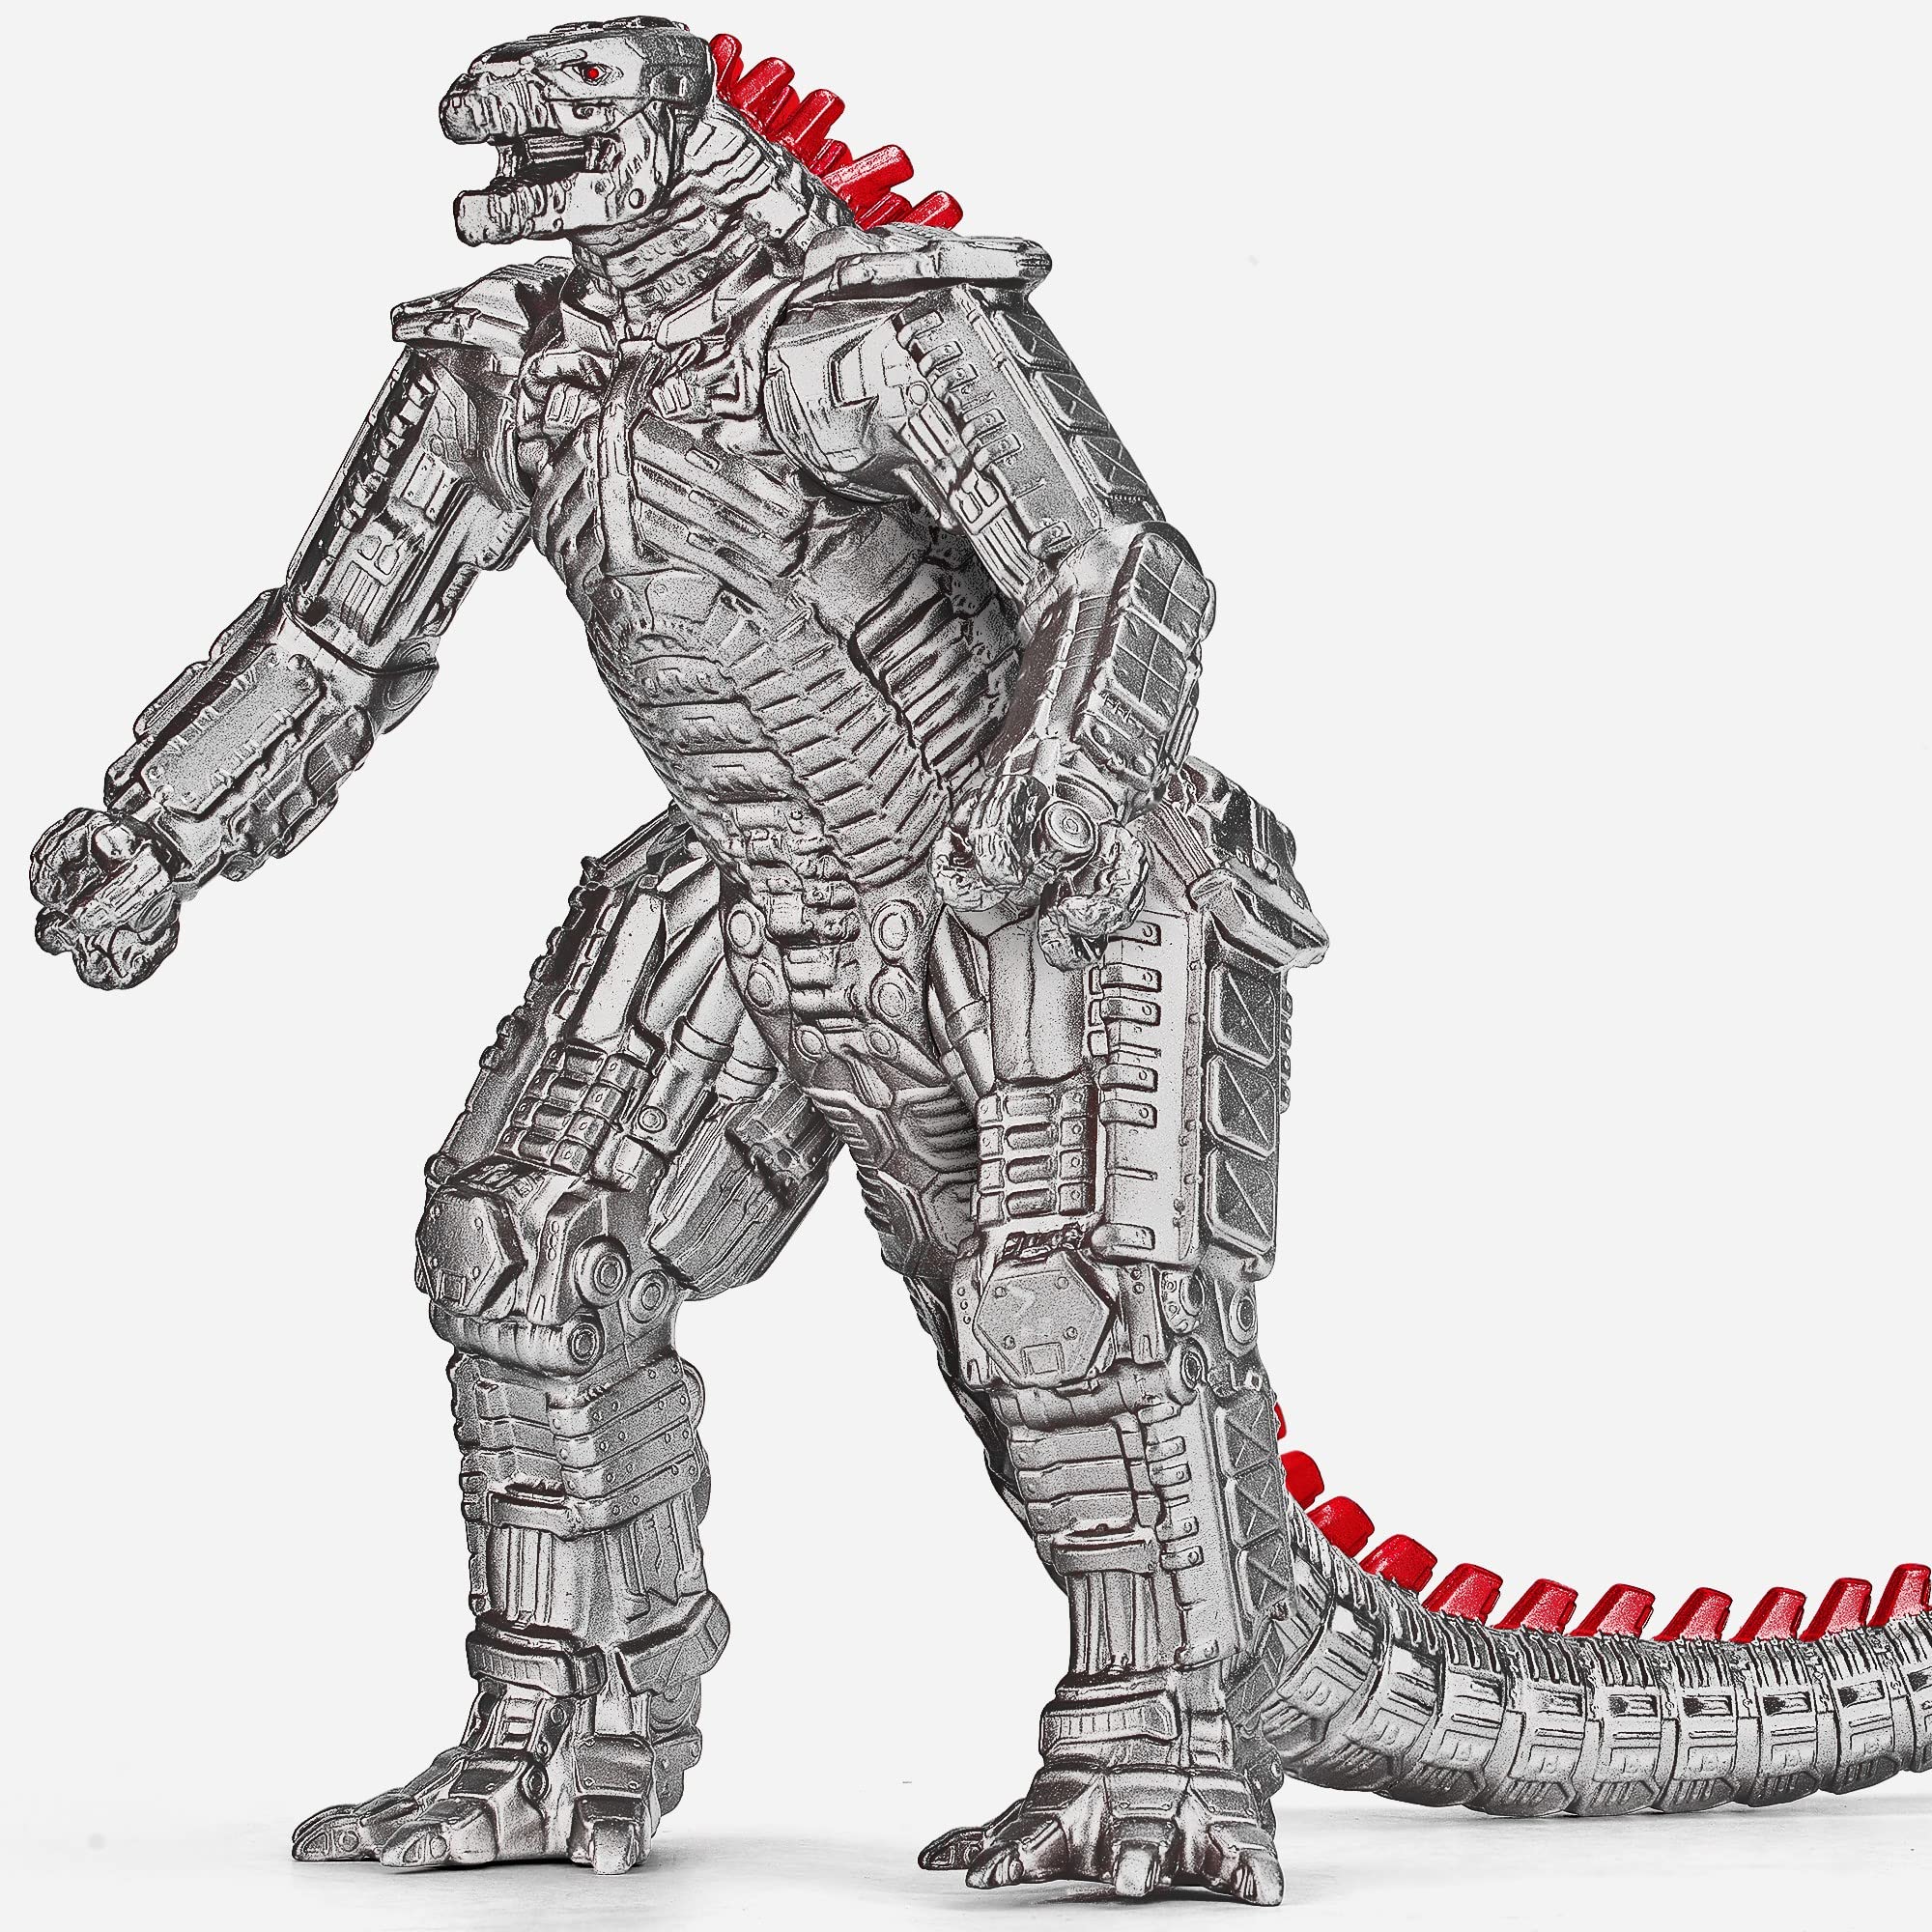 Hãy cùng chiêm ngưỡng hình ảnh Mechagodzilla với đầy đủ chi tiết trong từng bức vẽ. Với khả năng chiến đấu vượt trội, đây chắc chắn là một con quái vật không thể bỏ qua. Bức vẽ của các họa sĩ sẽ khiến bạn cảm thấy như đang góp mặt trong trận chiến đầy kịch tính của Godzilla.